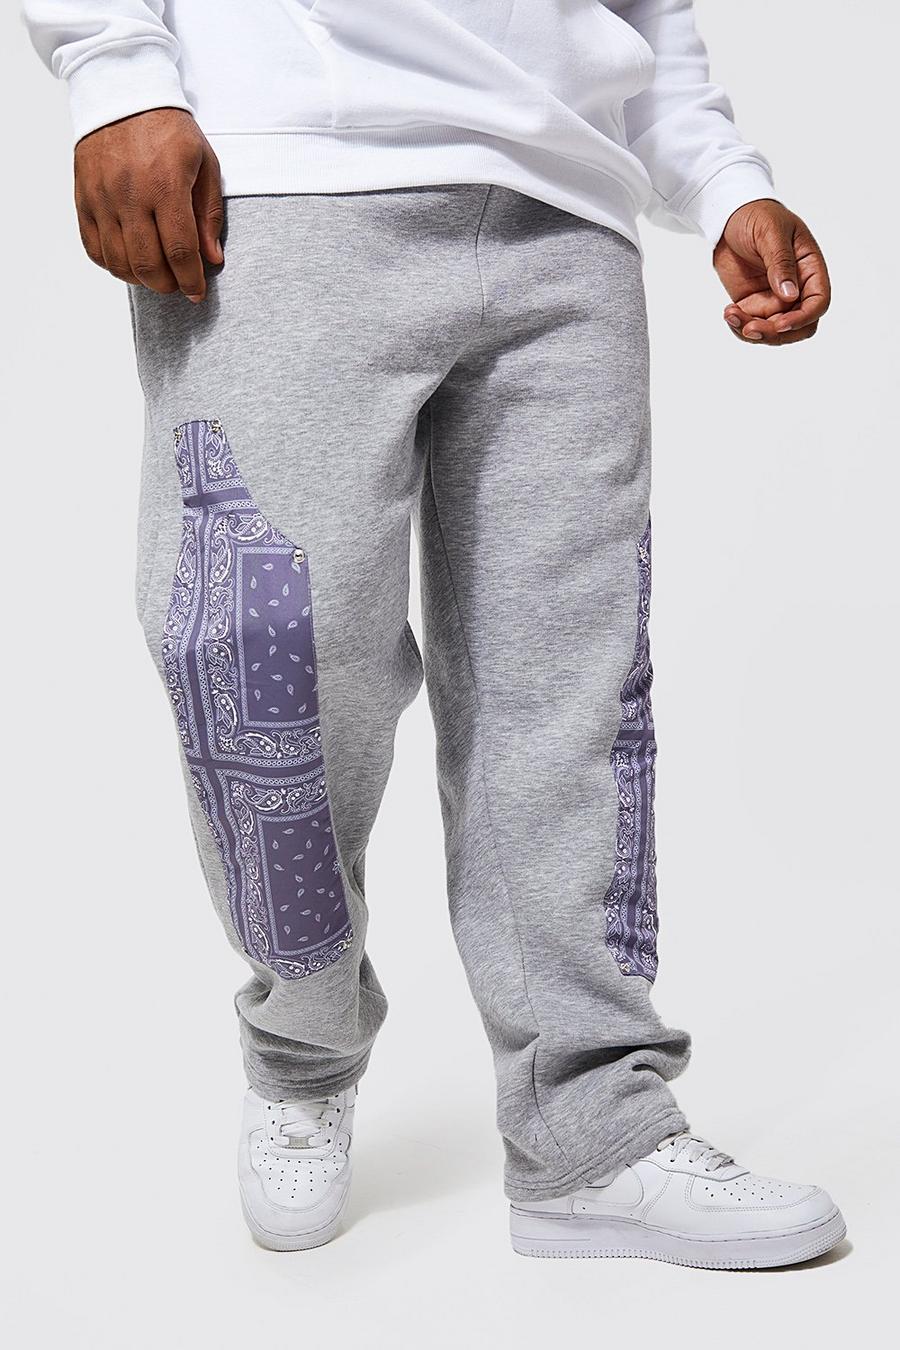 אפור gris מכנסי ריצה עם הדפס בנדנה ופאנל בסגנון מכנסי פועלים, מידות גדולות